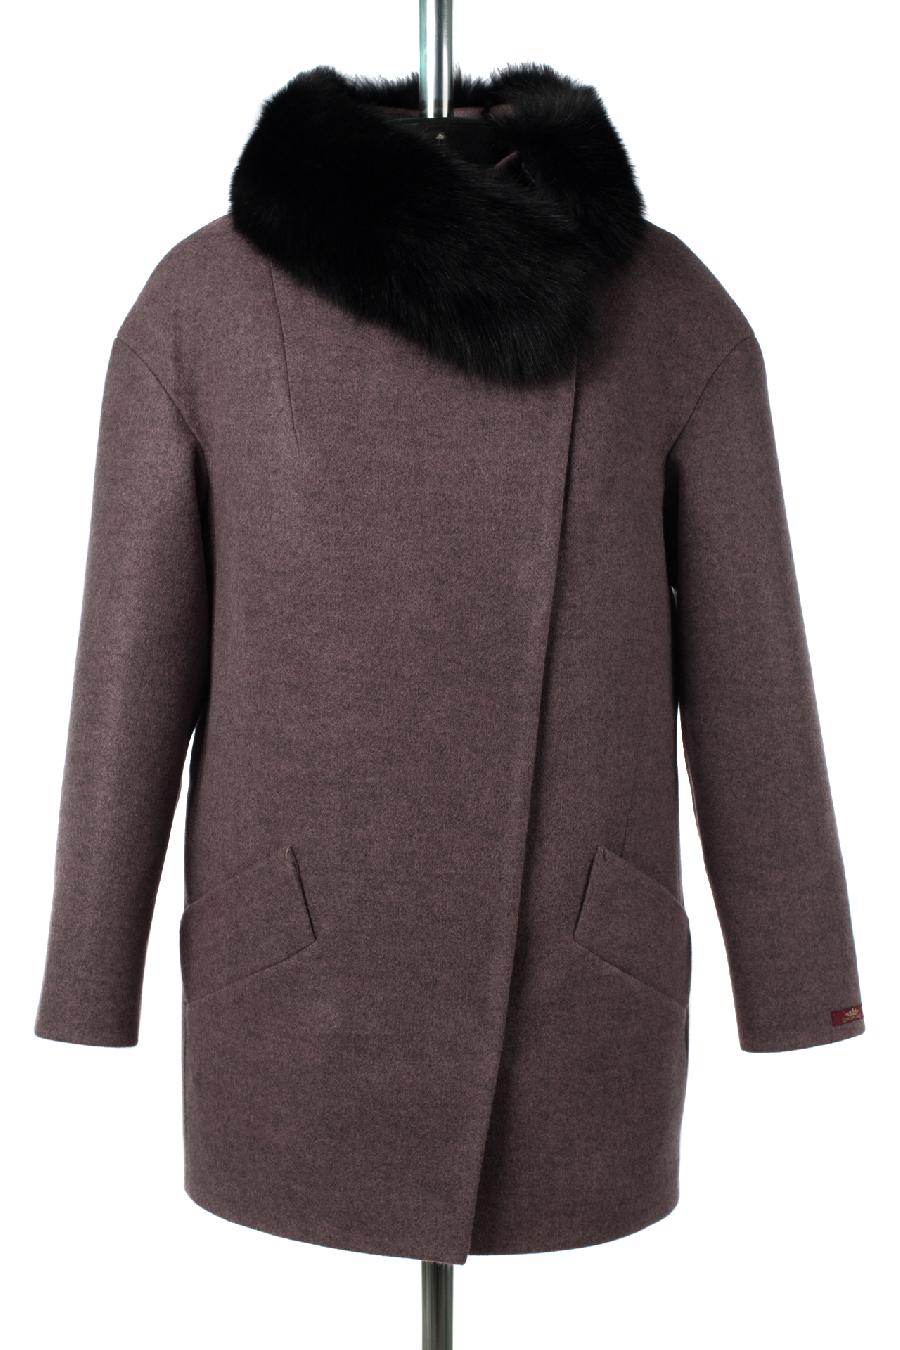 02-3101 Пальто женское утепленное  темно-сиреневый